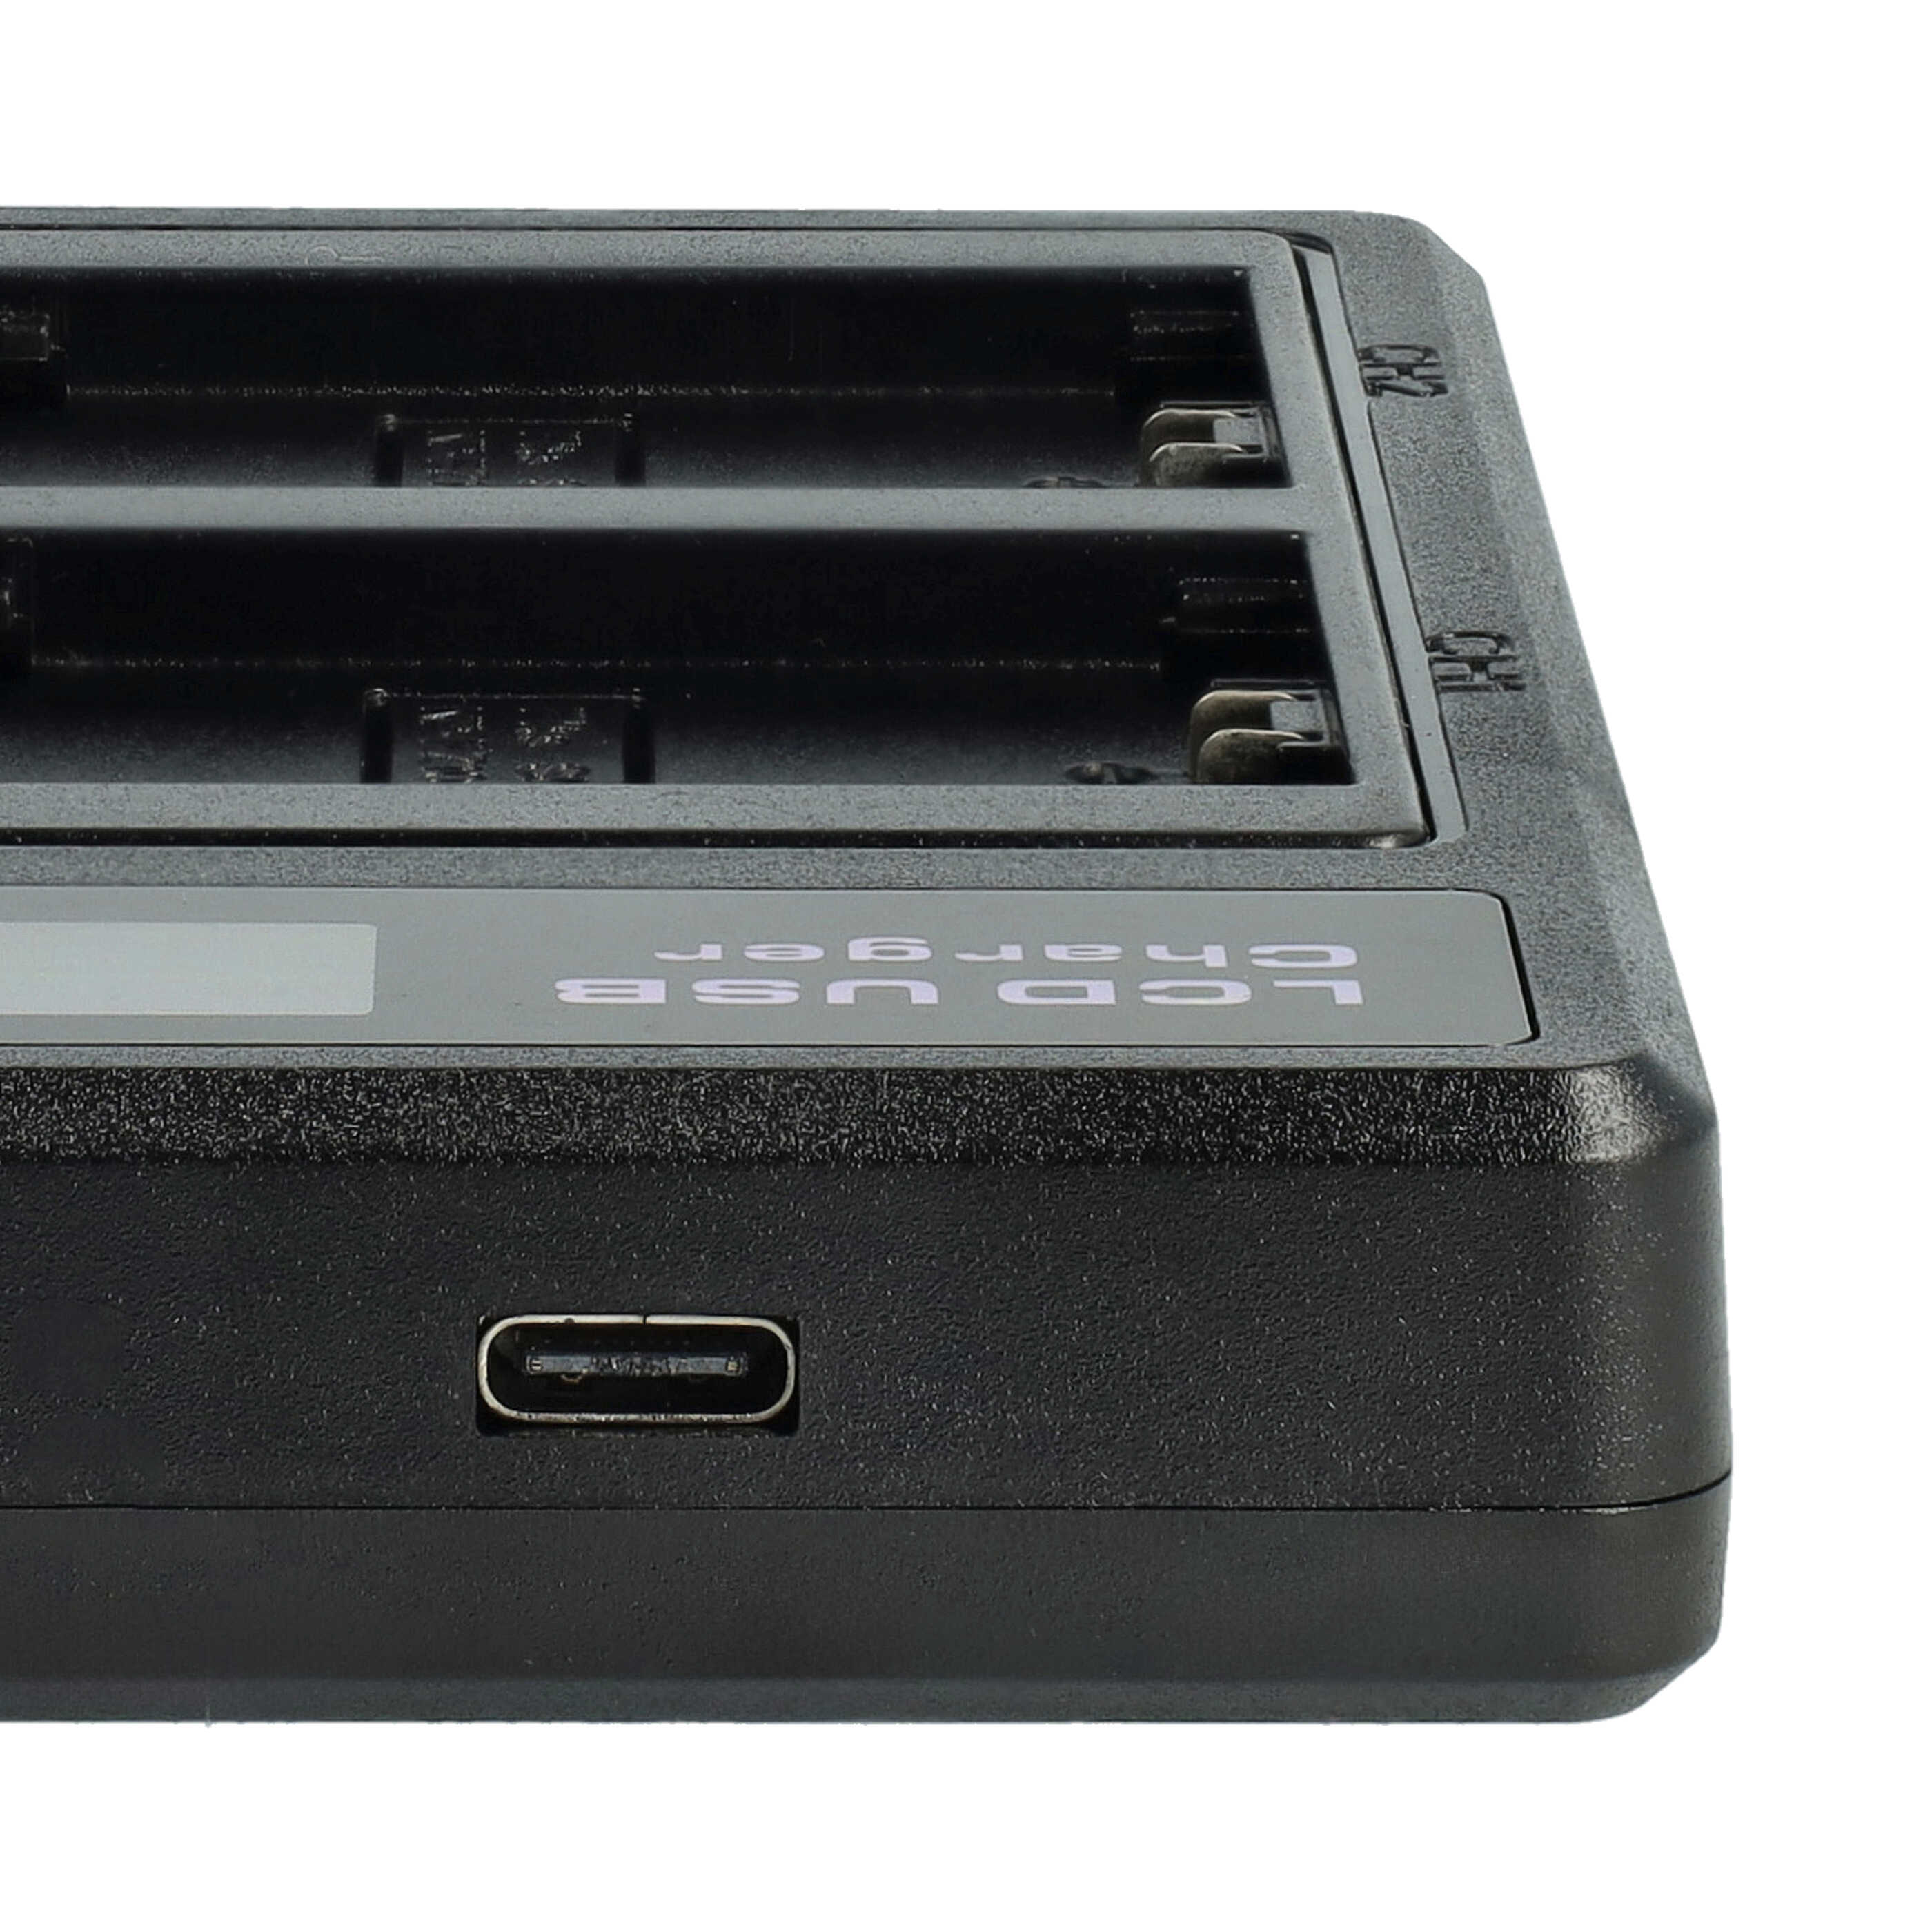 Ładowarka do aparatu Sony NP-FZ100 i innych - ładowarka akumulatora 0,5 A, 8,4 V